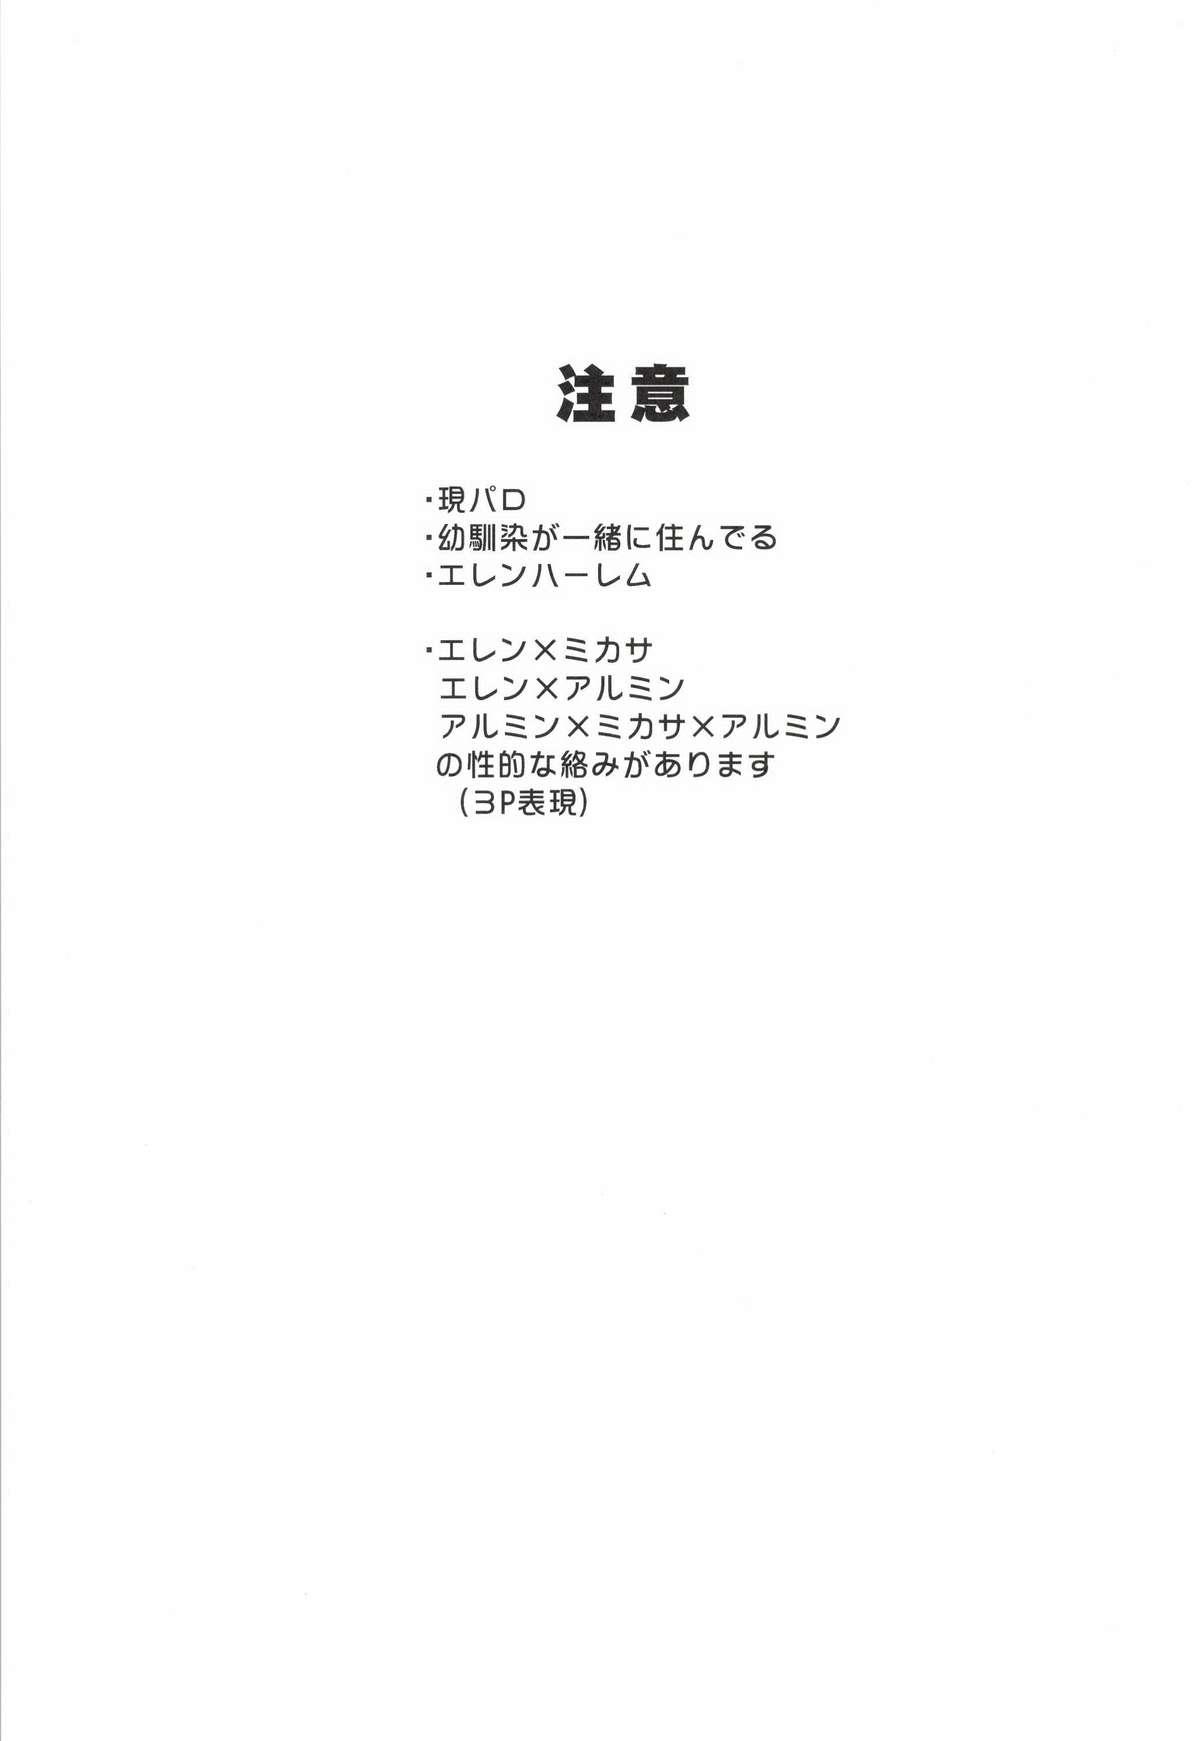 Bokep 3P - Shingeki no kyojin Couple Fucking - Page 3